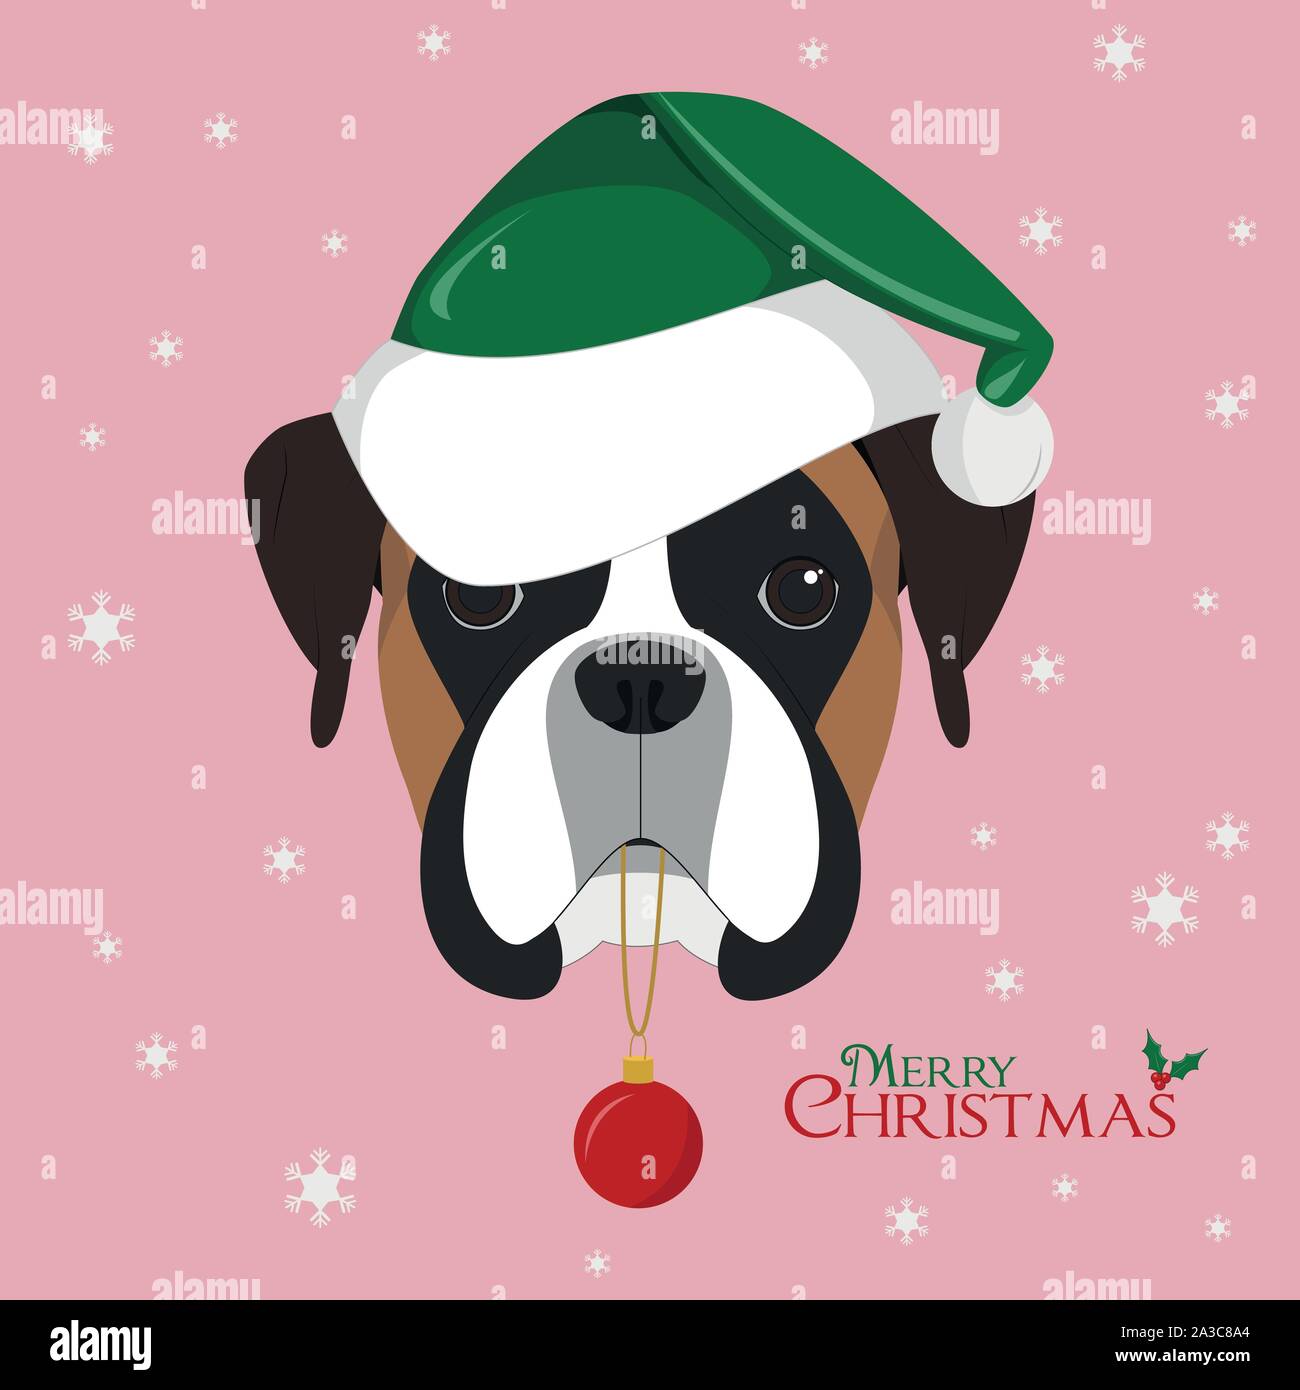 Weihnachten Grußkarte. Boxer Hund mit Hut grün Santa's und Weihnachten Spielzeug ball Stock Vektor